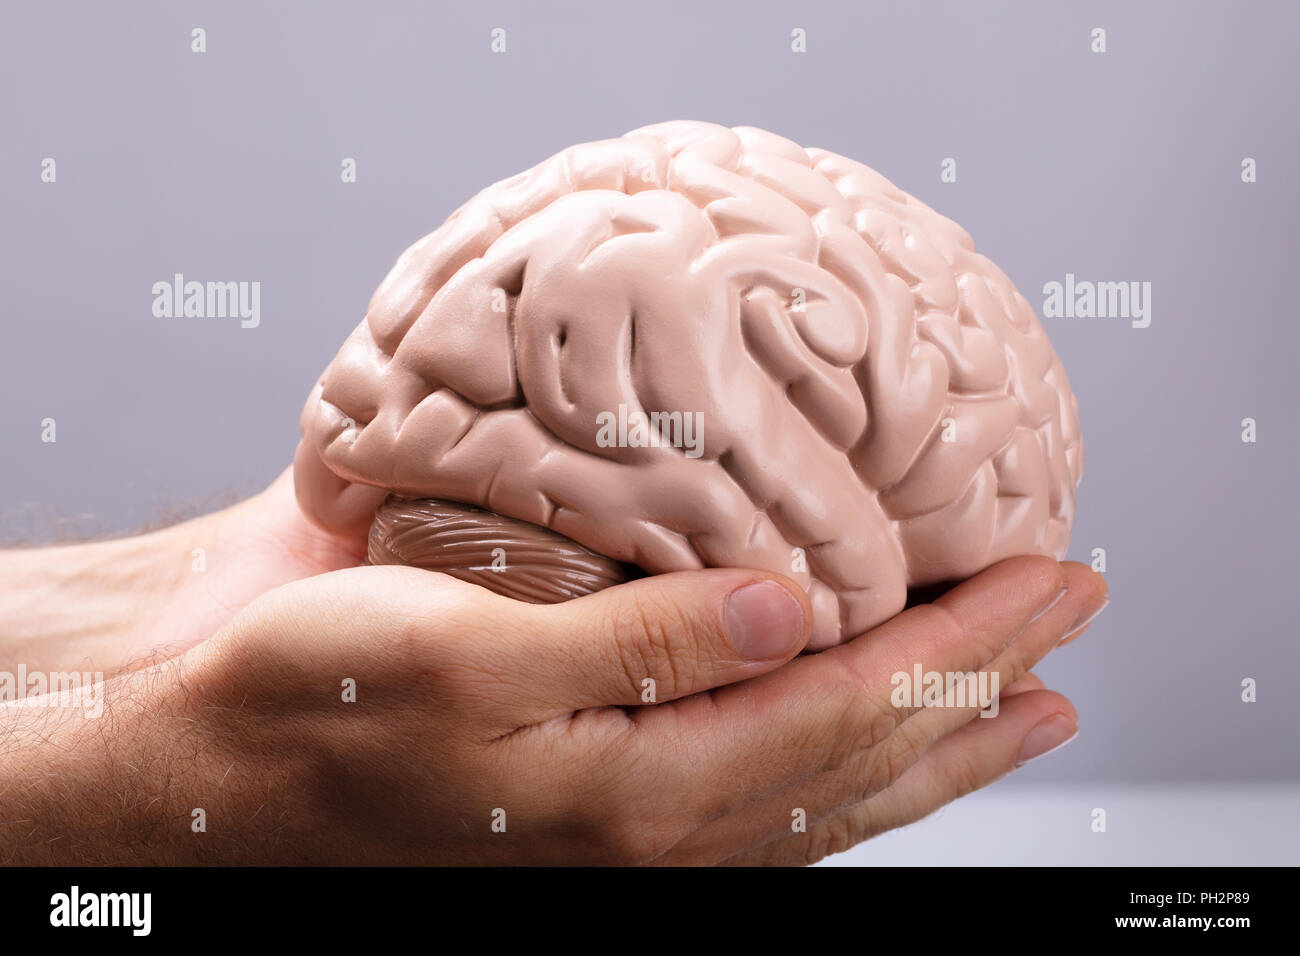 Close-up of a person's Hand Holding Modèle du cerveau humain Banque D'Images